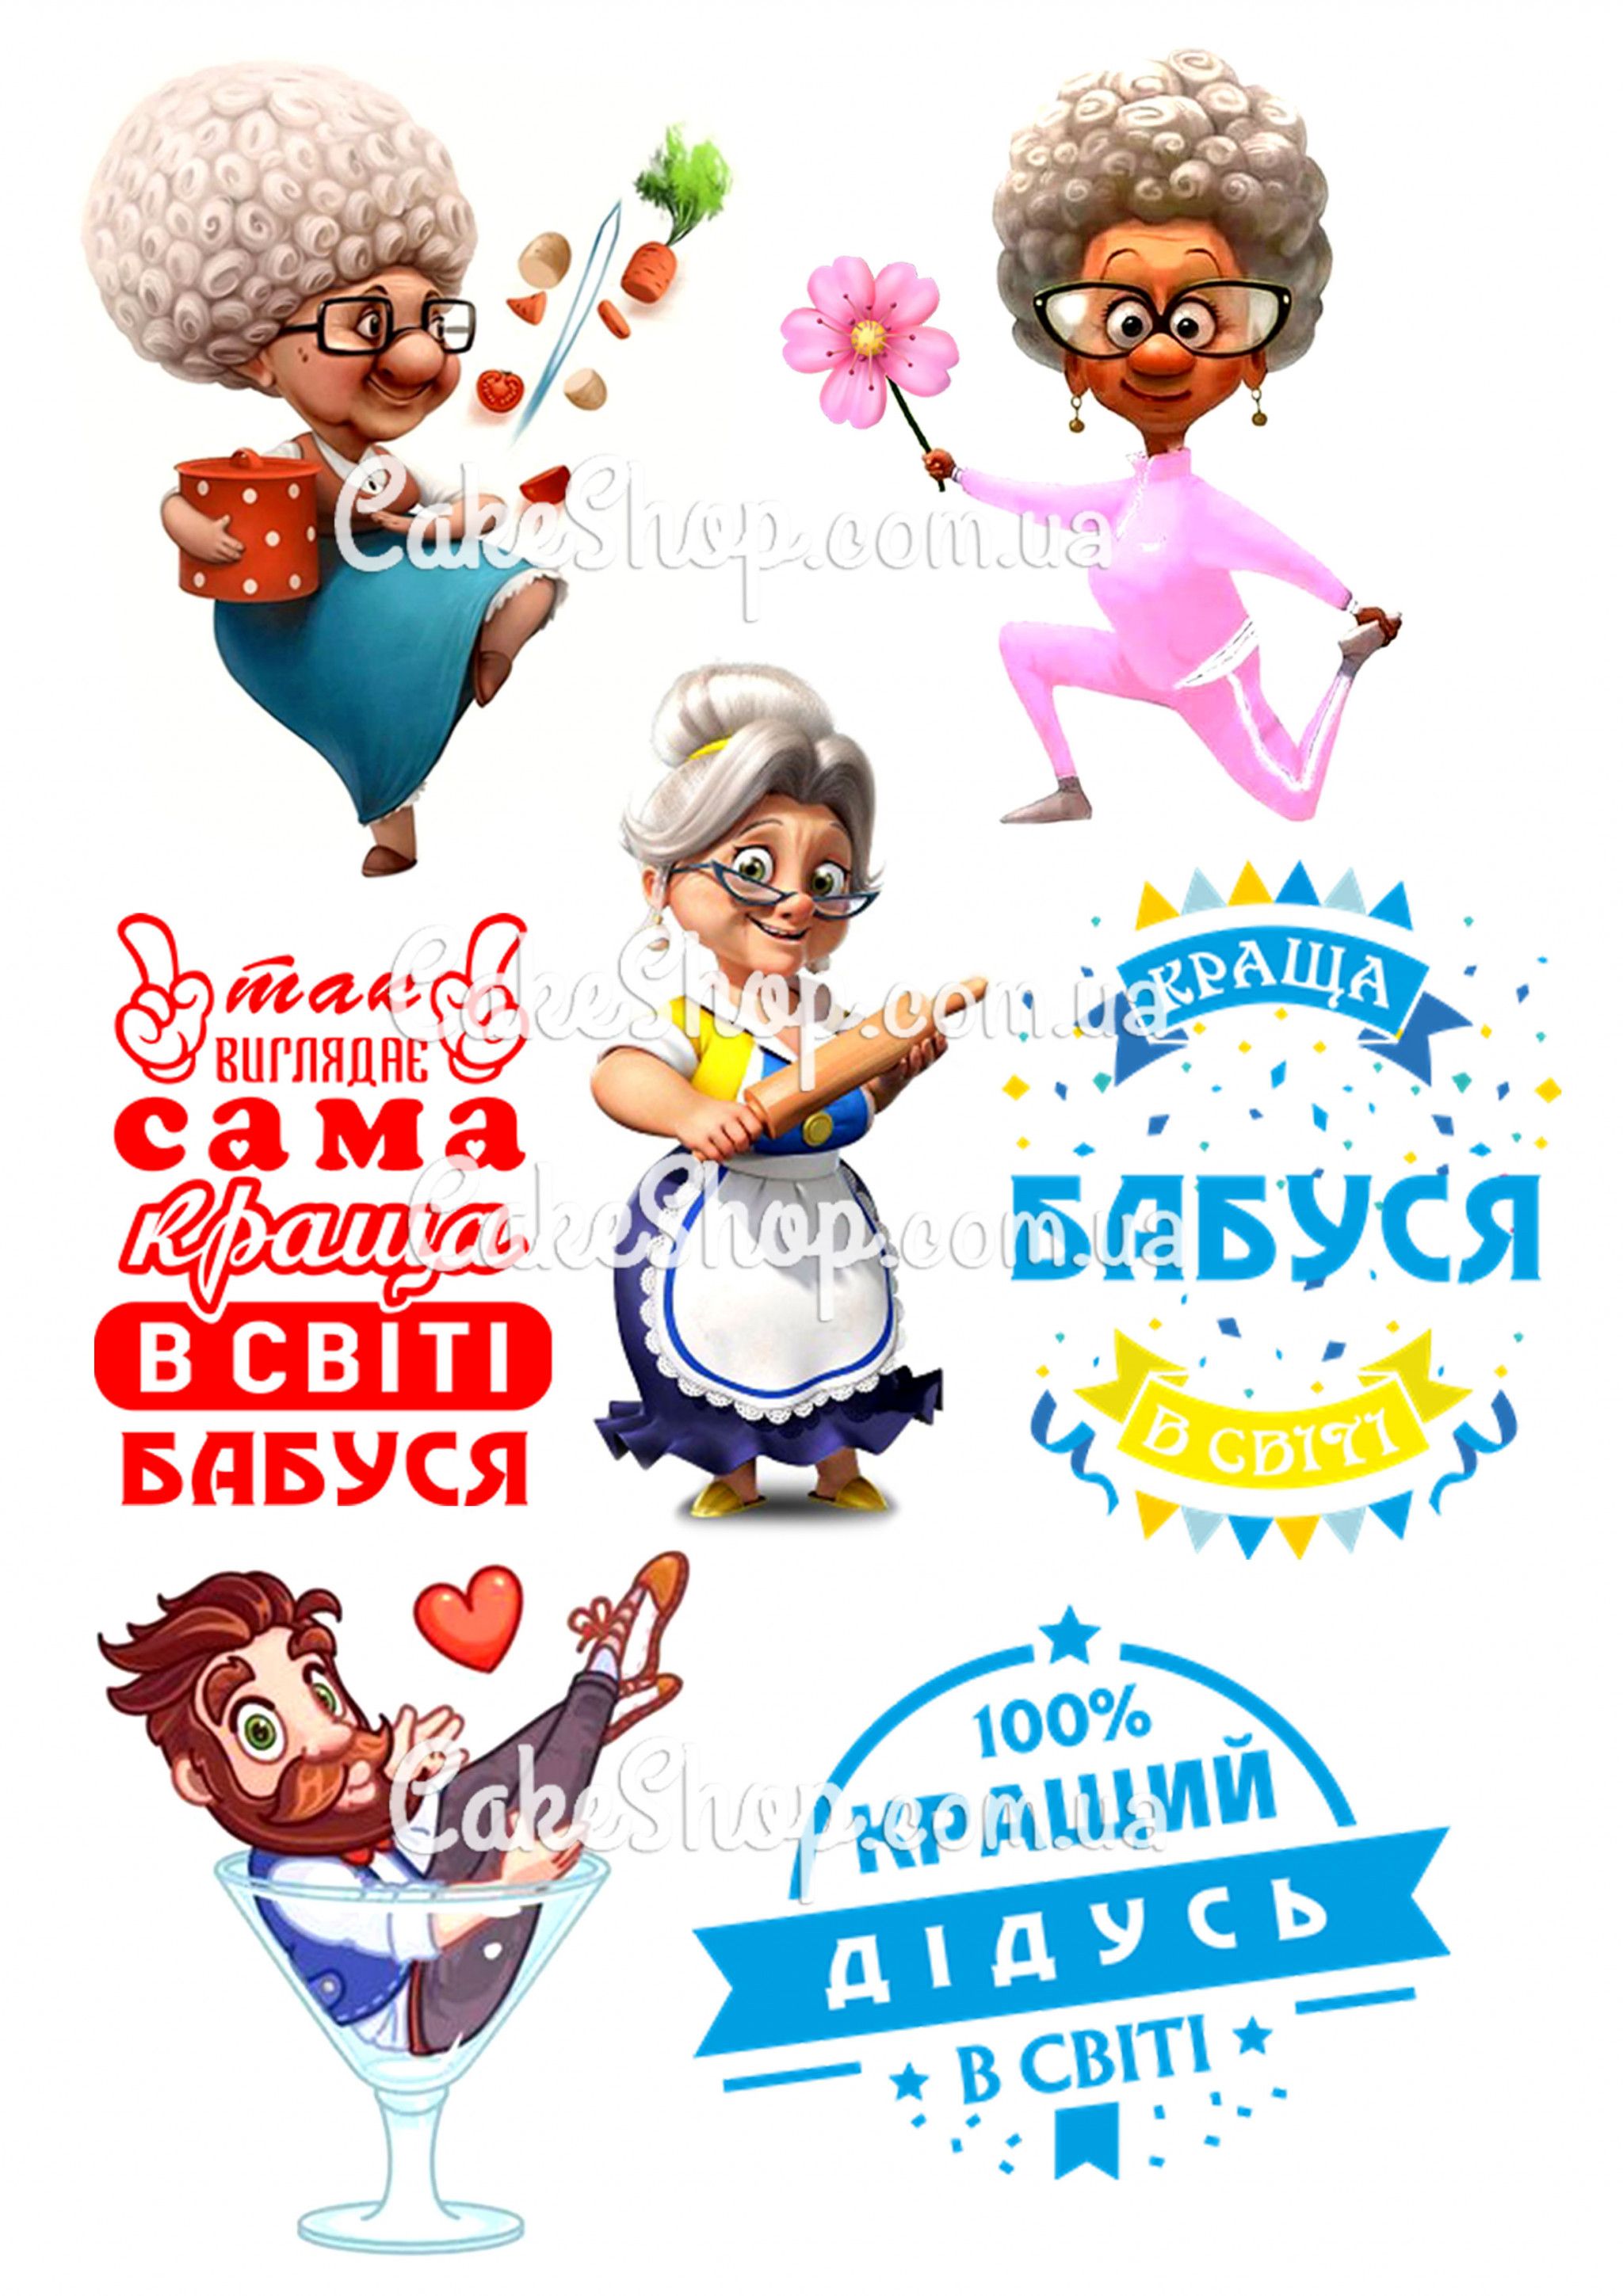 ⋗ Вафельная картинка Бабушка и Дедушка купить в Украине ➛ CakeShop.com.ua, фото